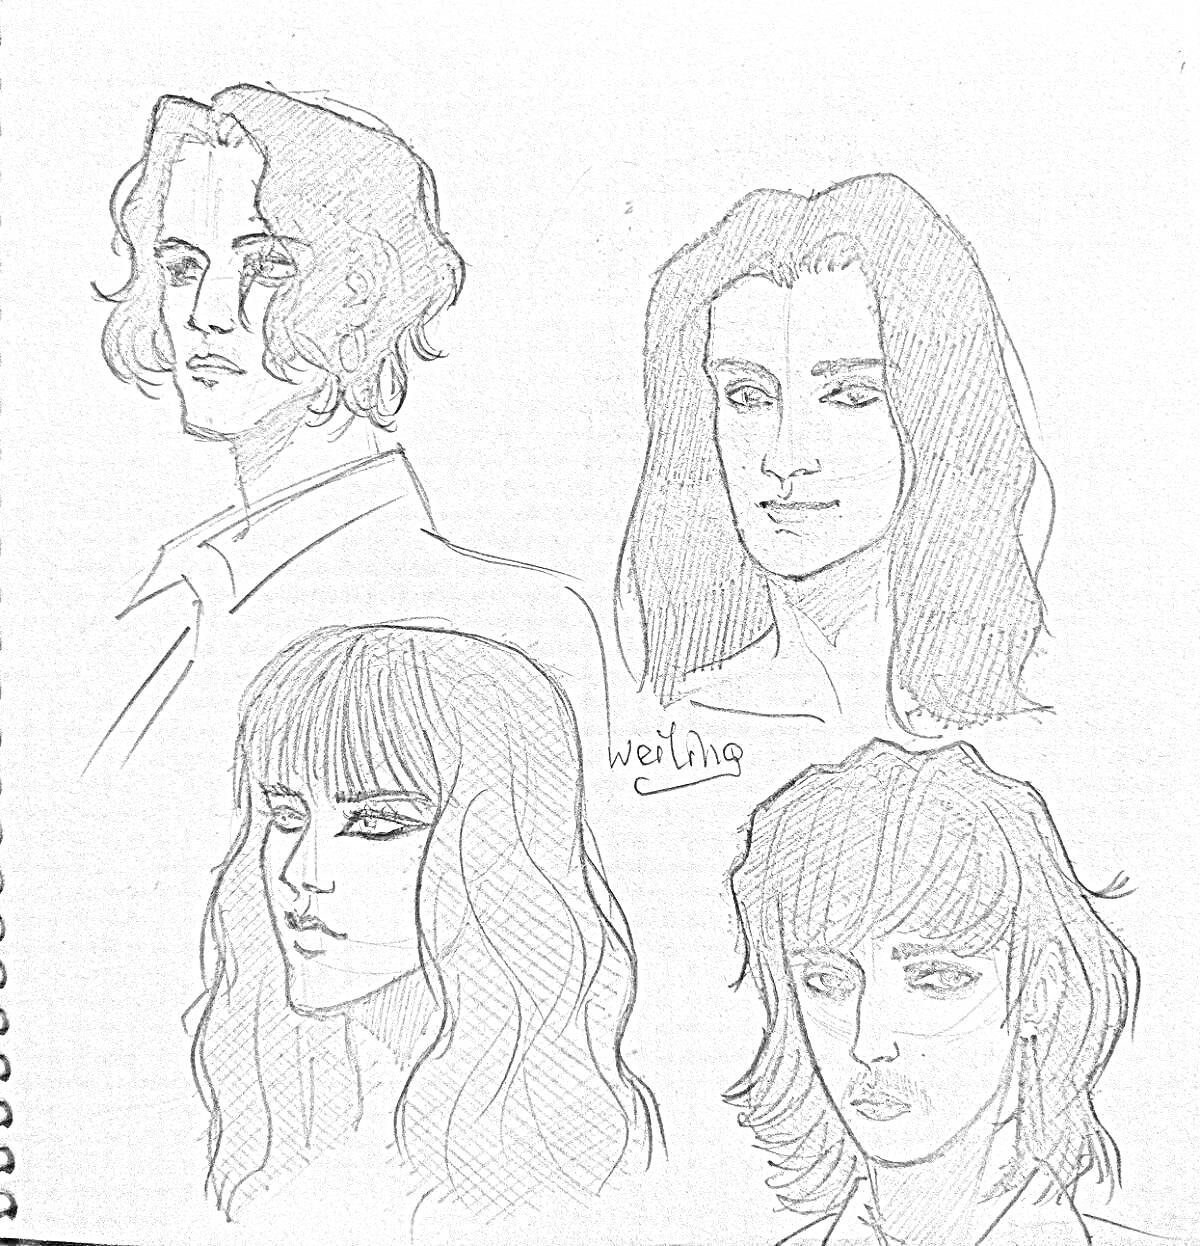 Раскраска Четыре портретных рисунка людей с длинными волосами в стиле наброска